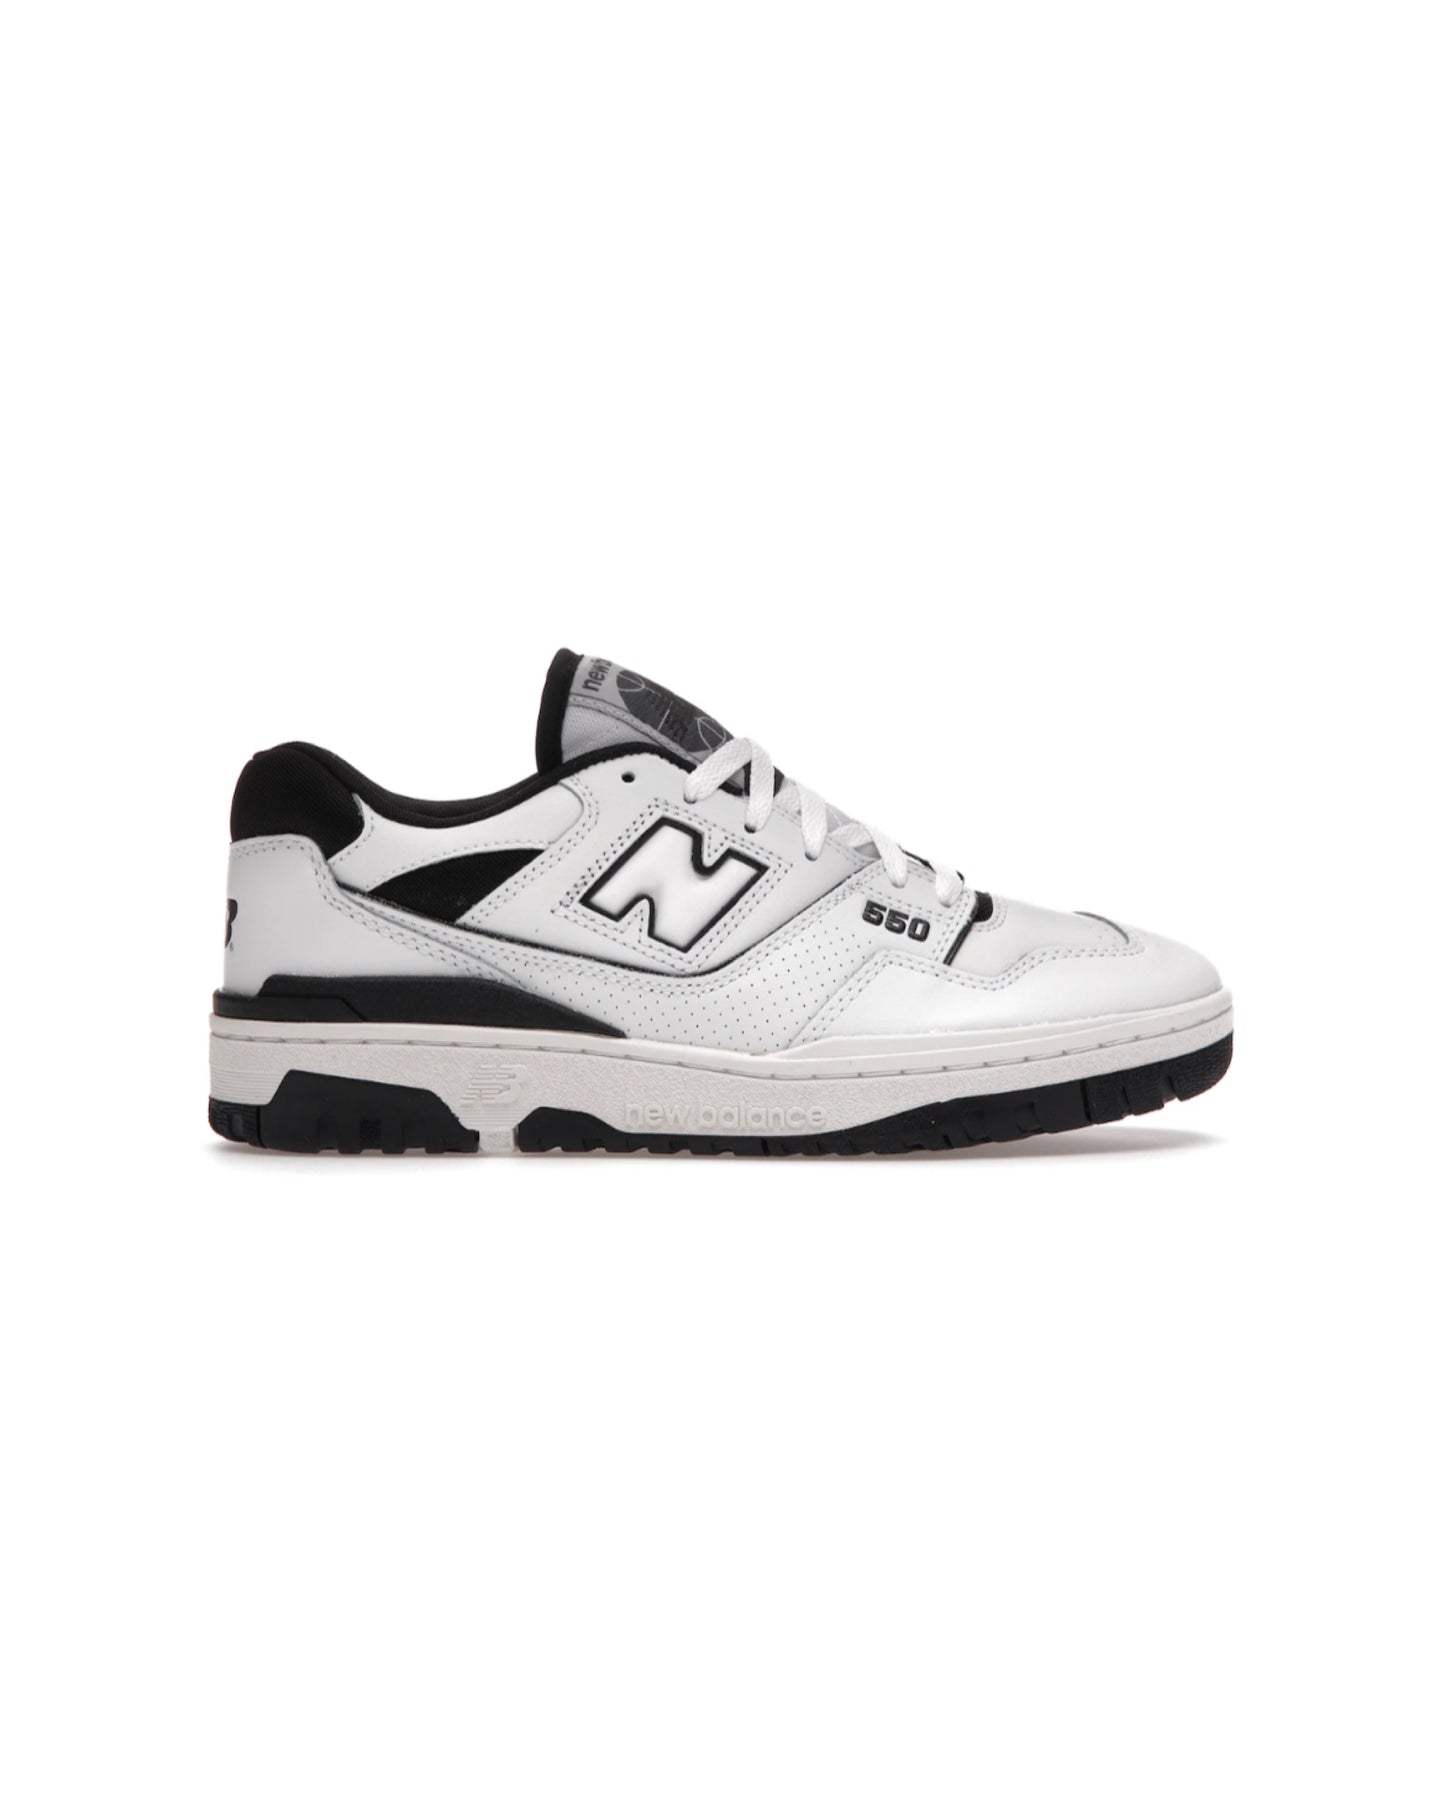 NB 550 “white black”